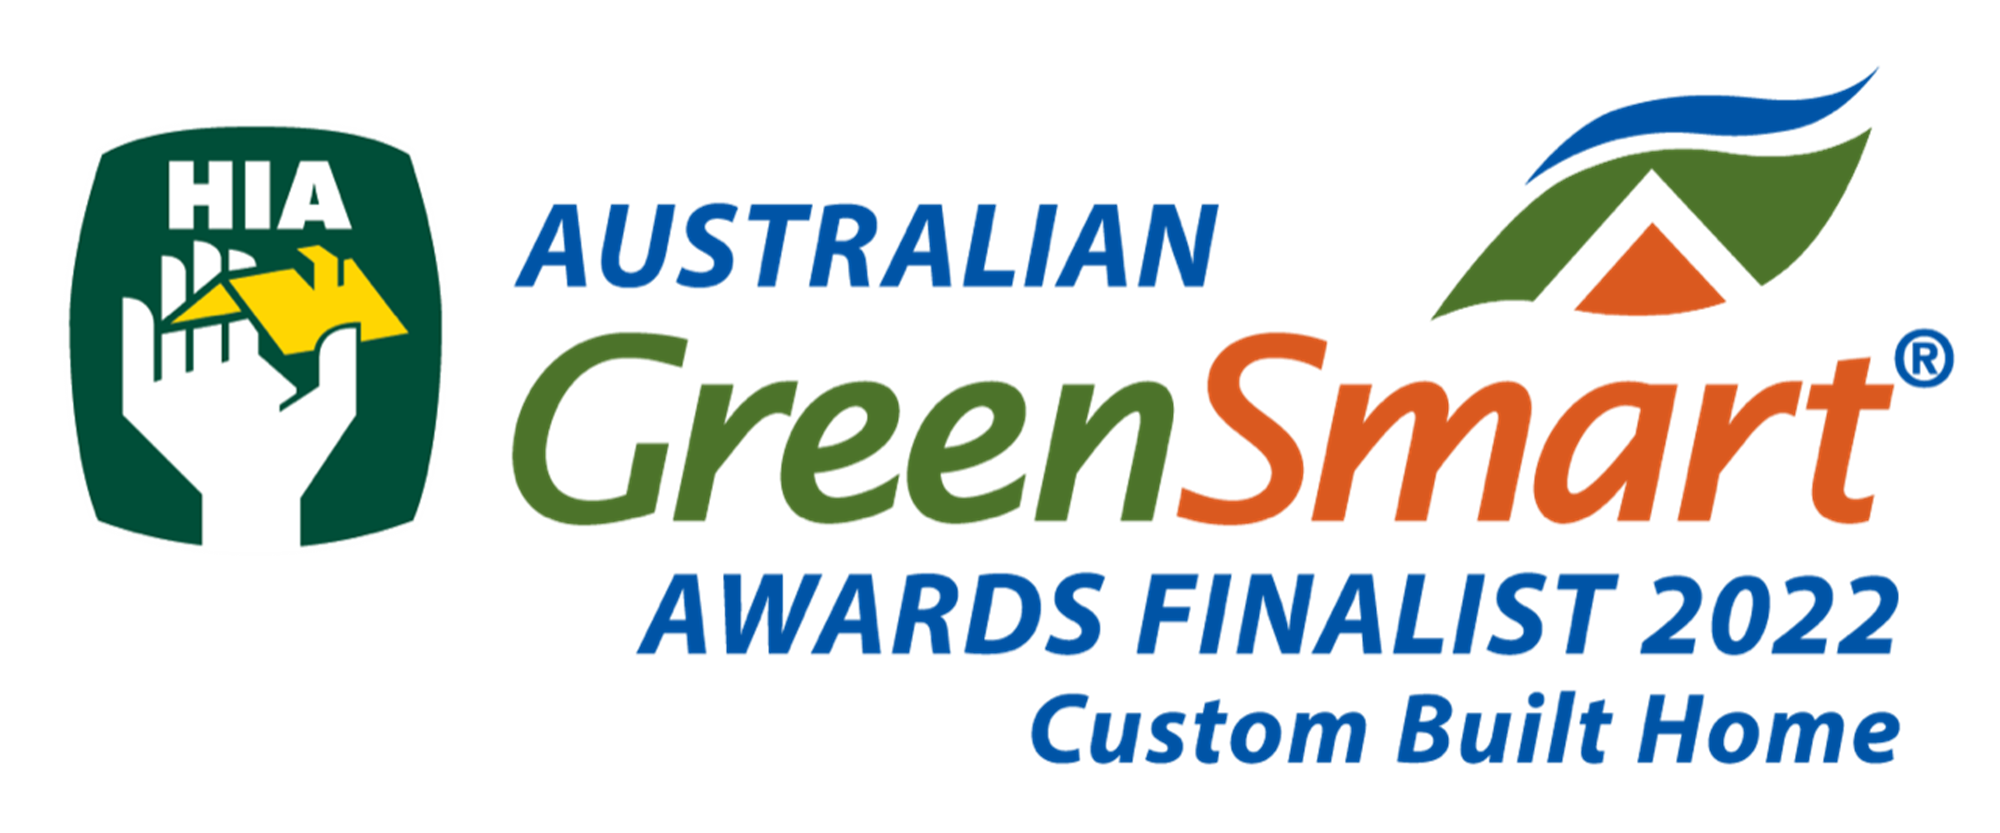 Australian Green Smart Awards Finalist 2022 - Custom Built Home